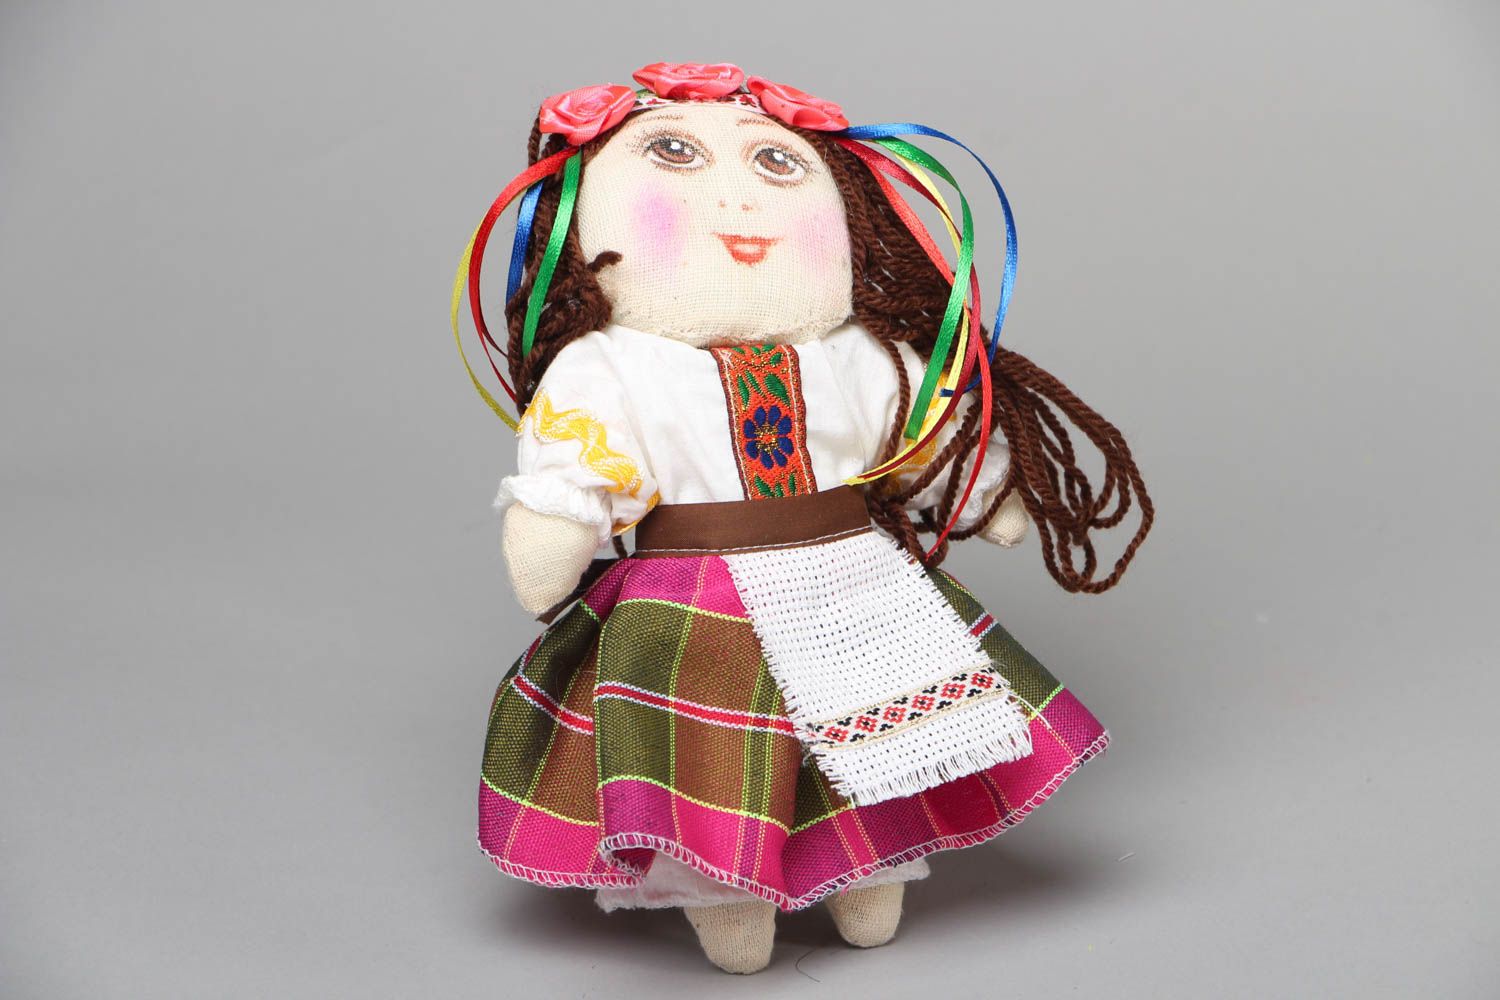 Textil Puppe handmade Ukrainerin foto 1